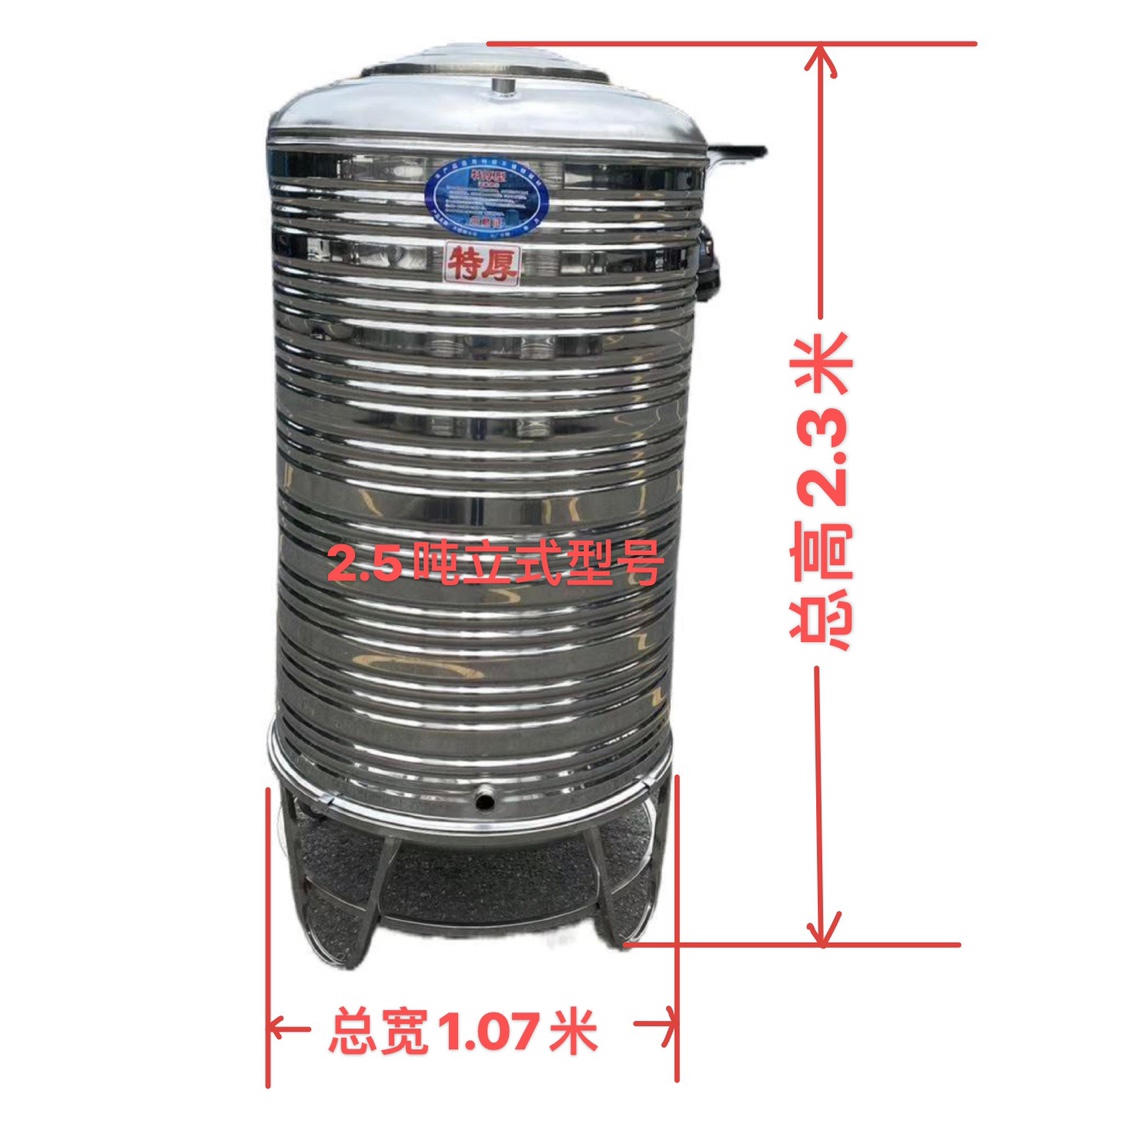 新304不锈钢水箱储水桶家用卧式加厚空气能楼顶水房蓄水罐酒罐品